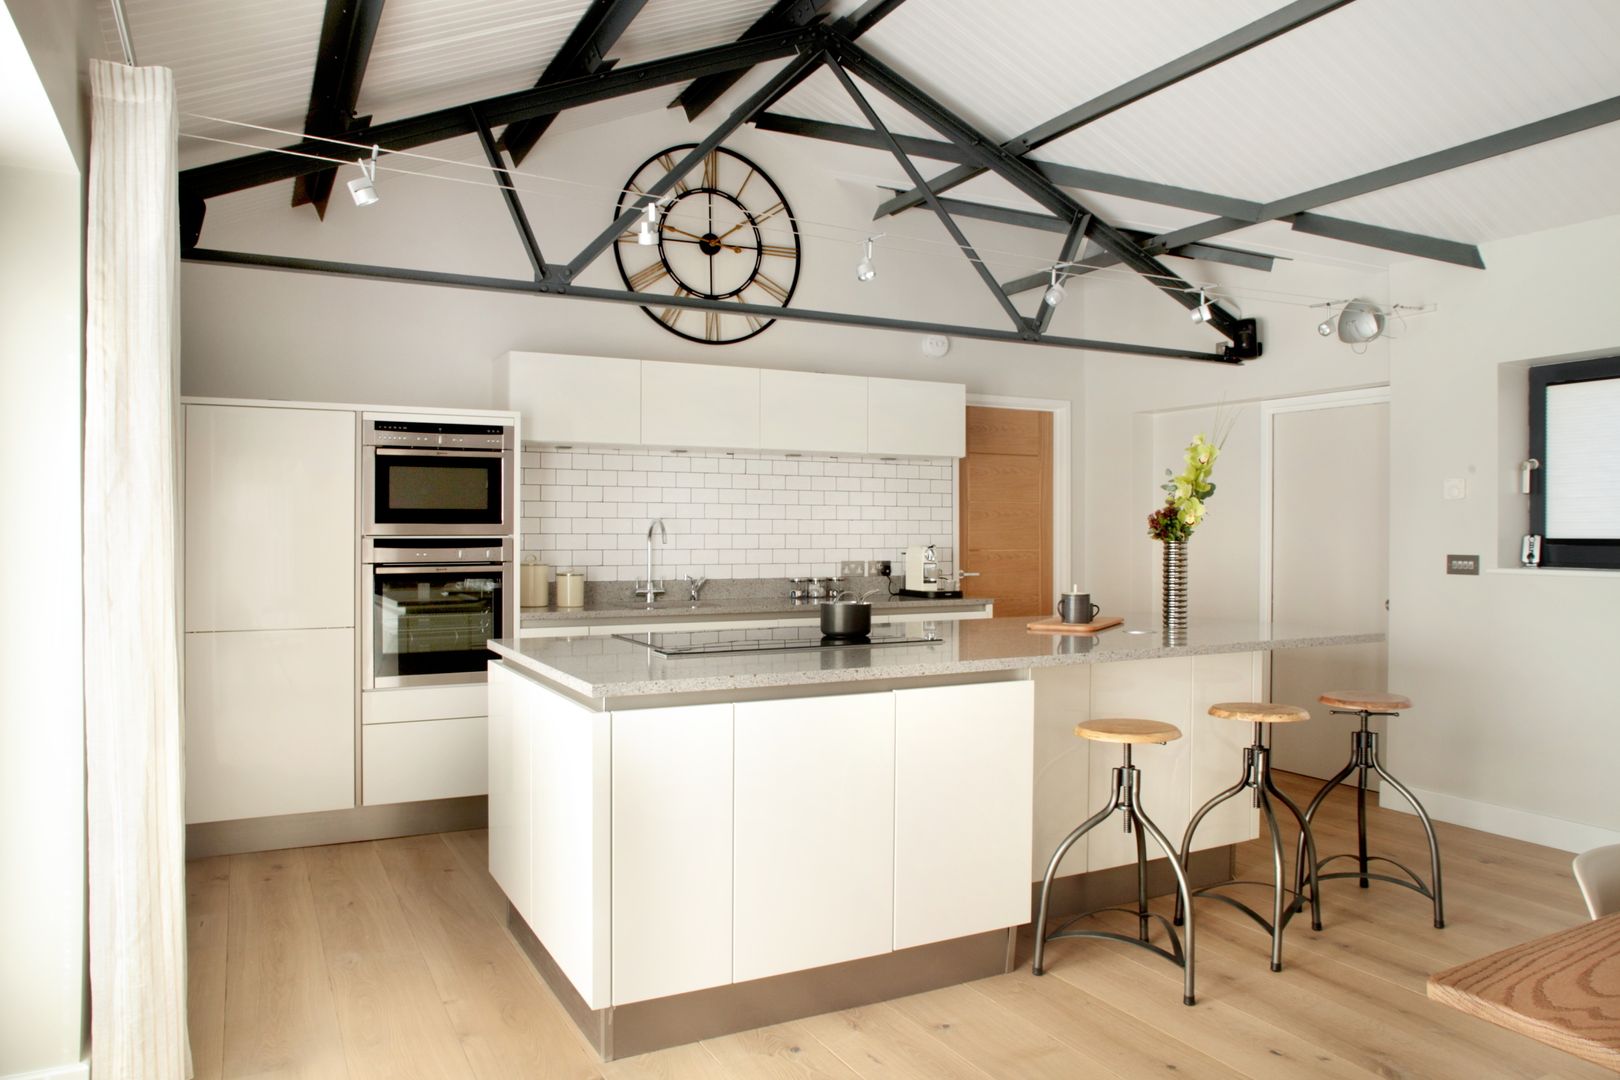 The Cow Shed Barn Conversion Kitchen in-toto Kitchens Design Studio Marlow Cocinas de estilo clásico